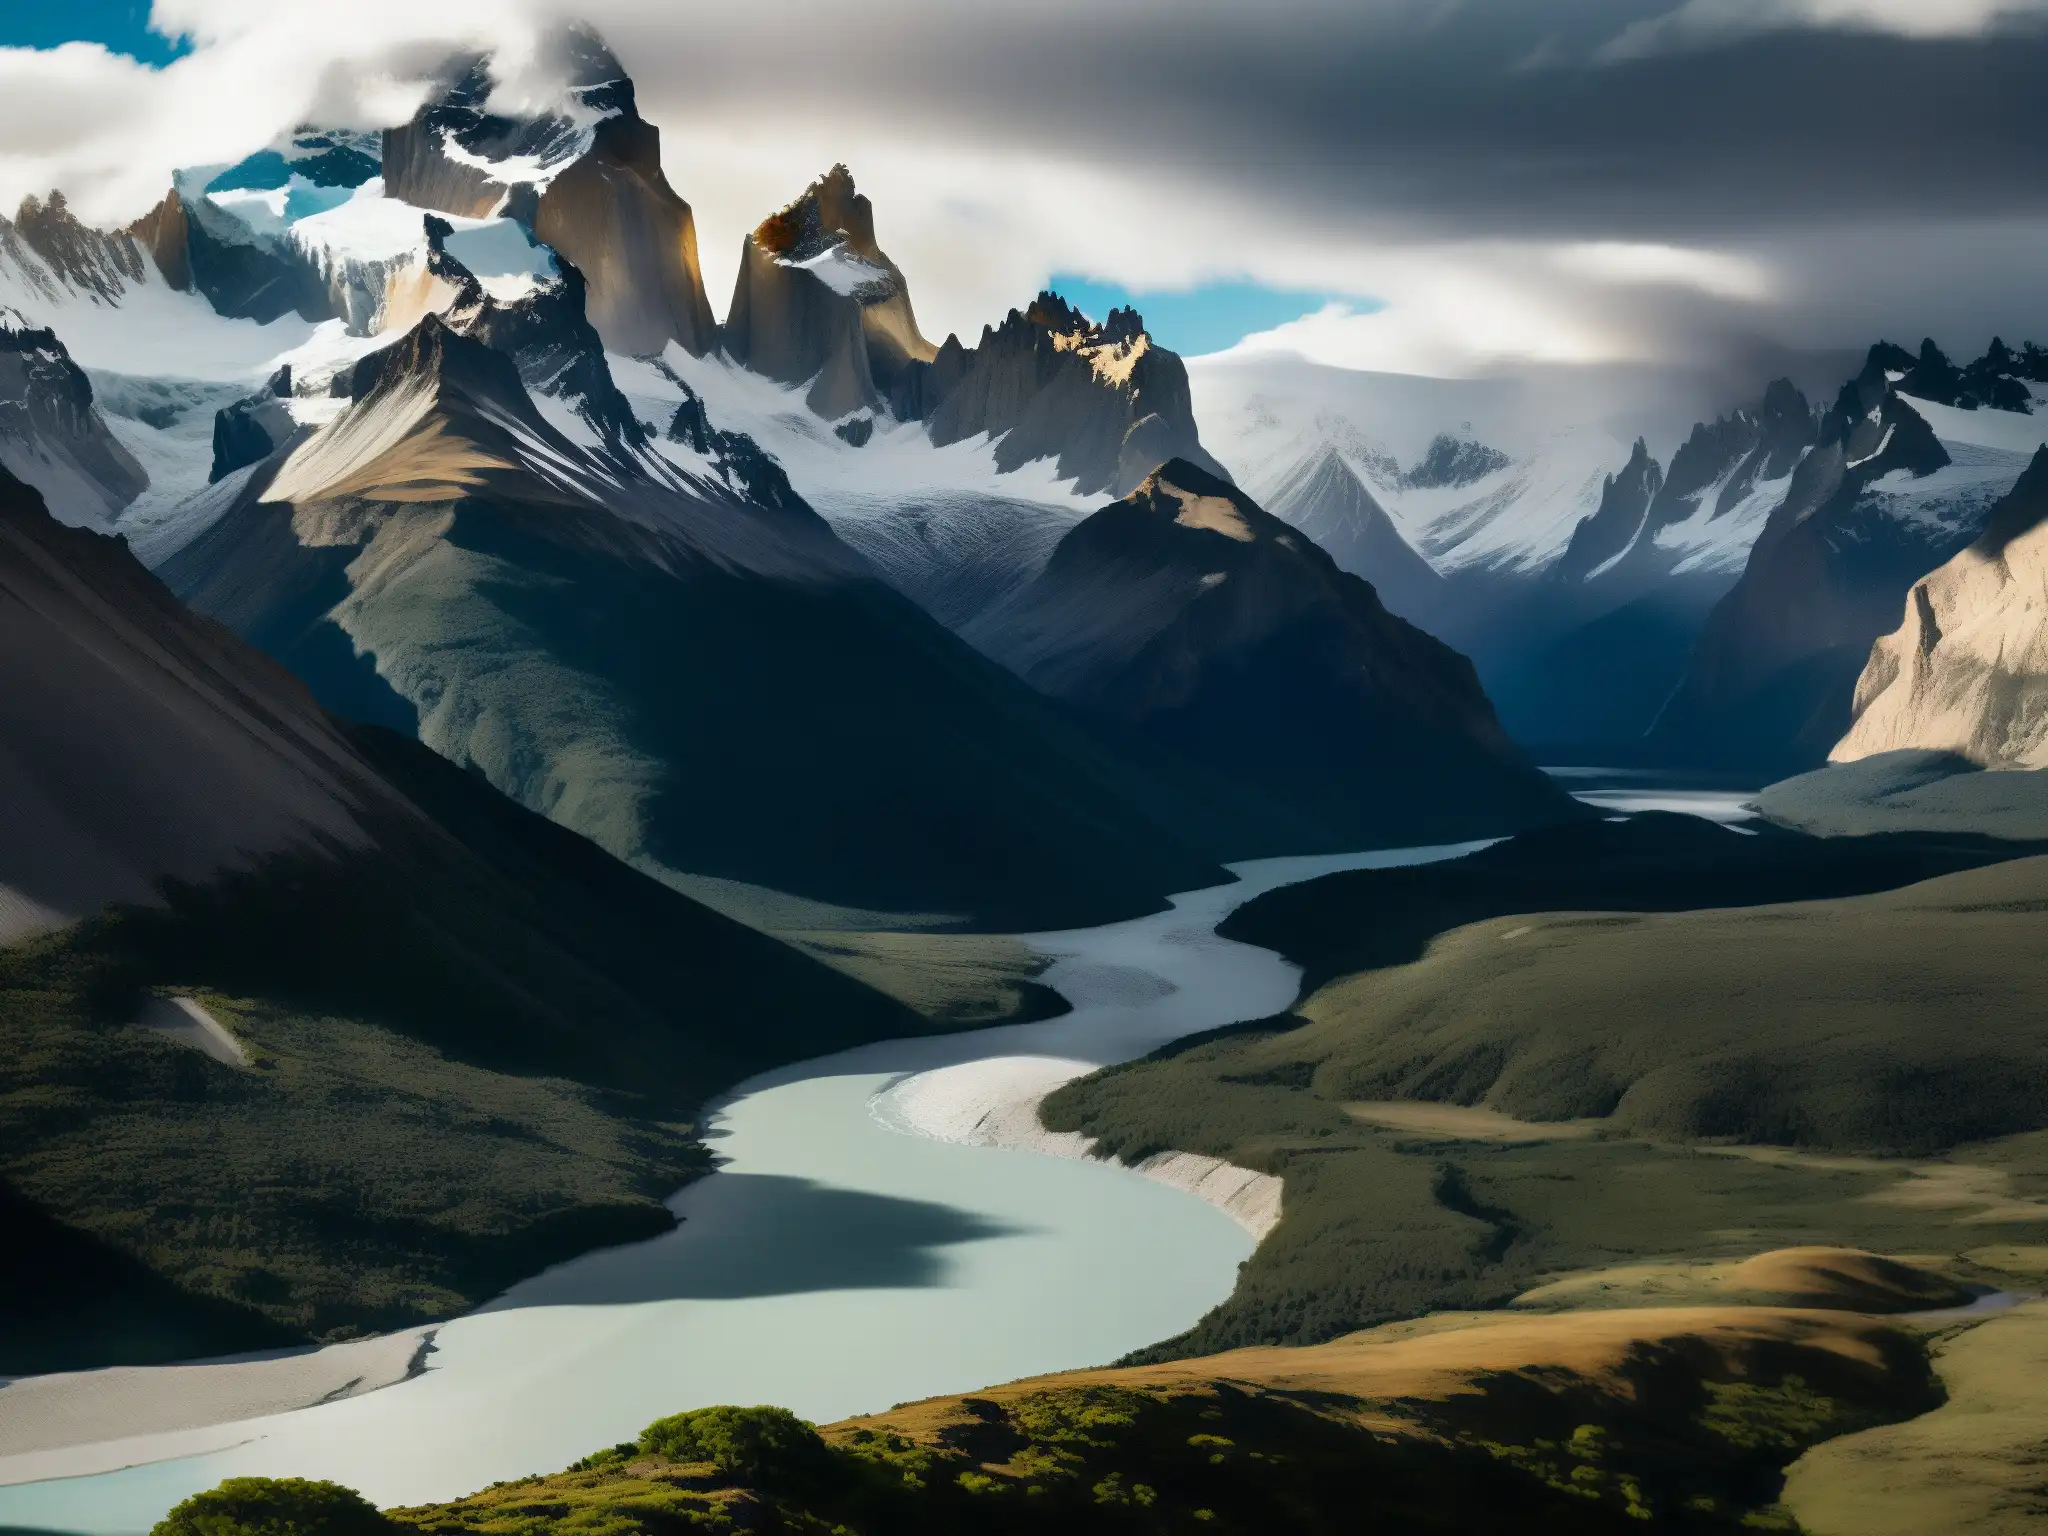 La Ciudad de los Césares Patagonia: Impresionante paisaje de montañas nevadas, llanuras ventosas y río glacial en Patagonia